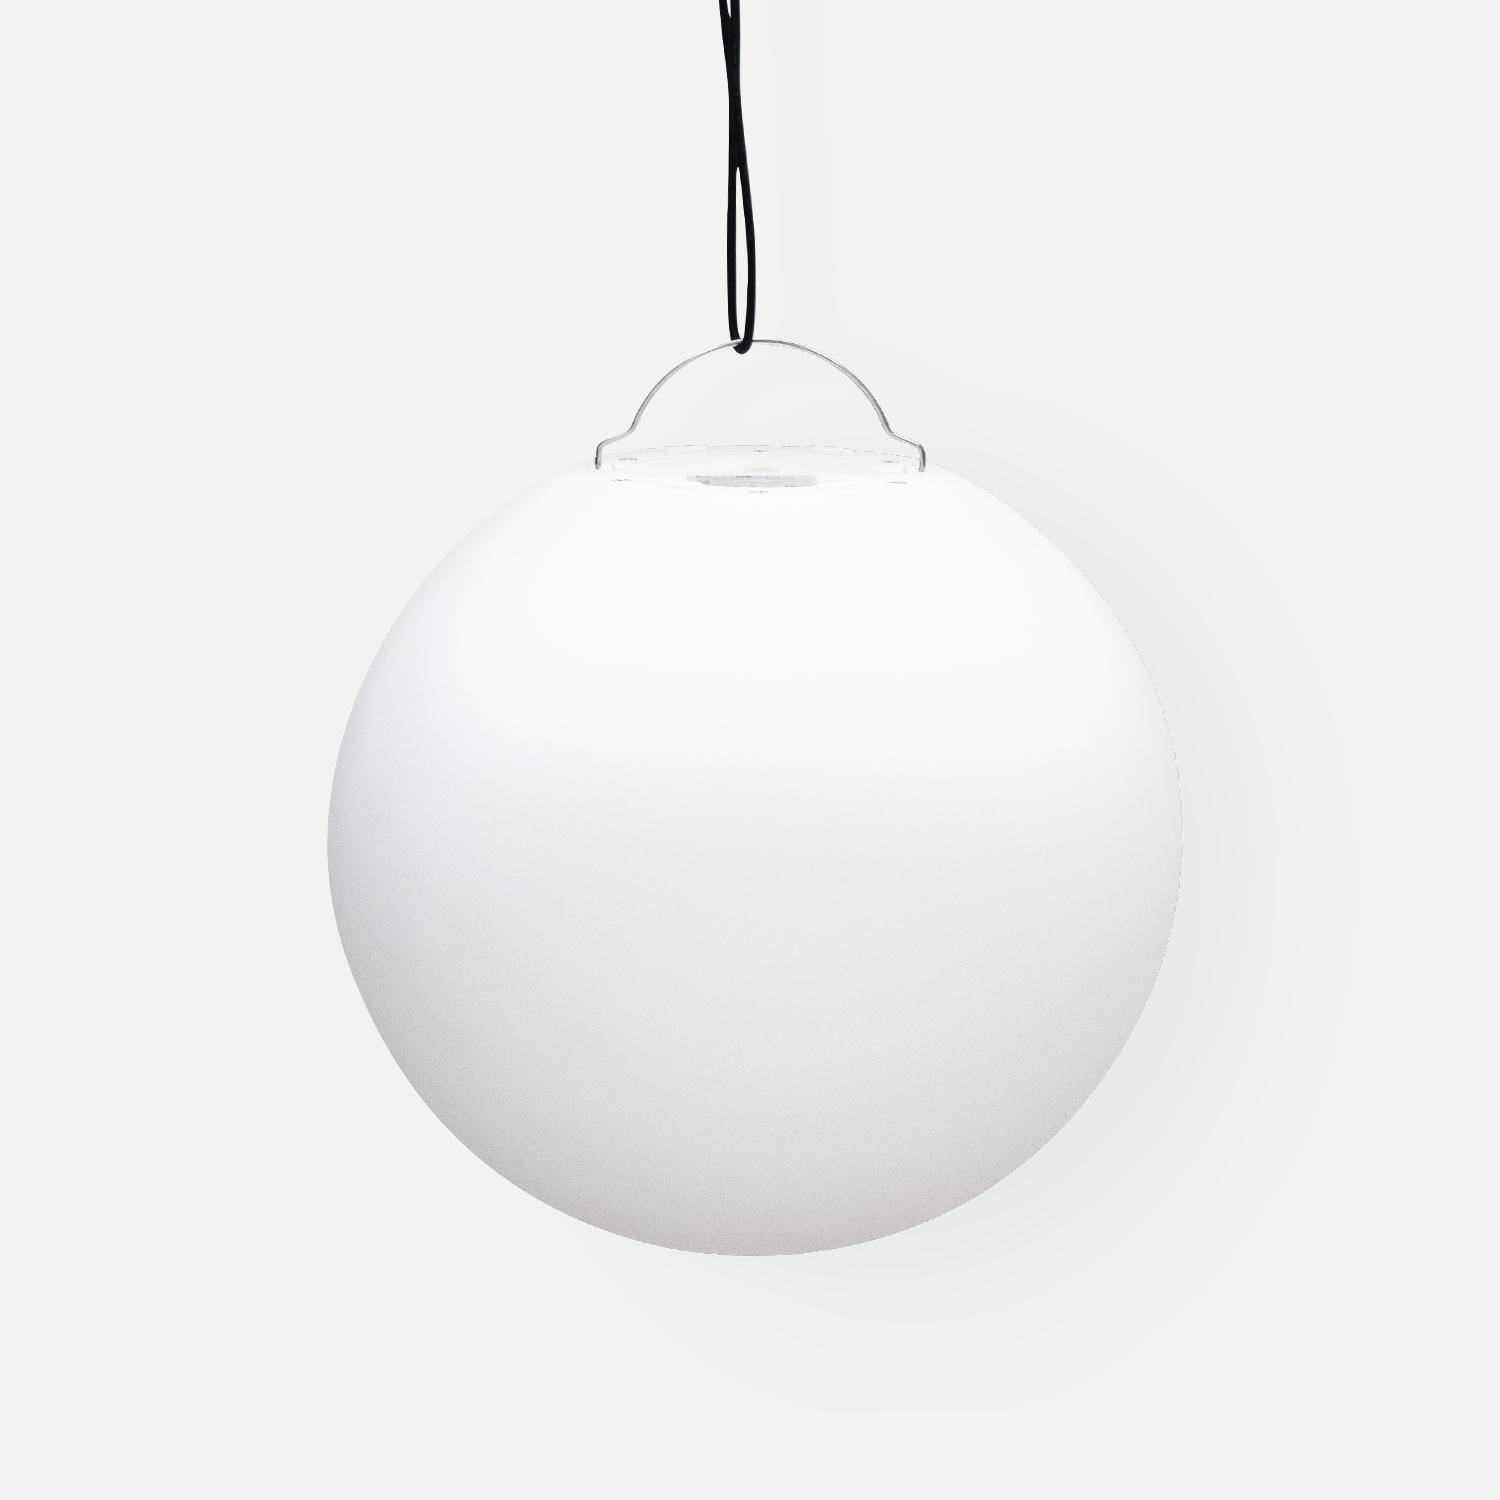 LED-Kugel 30cm - Dekorative Leuchtkugel, Ø30cm, warmweiß, mit Fernbedienung Photo5